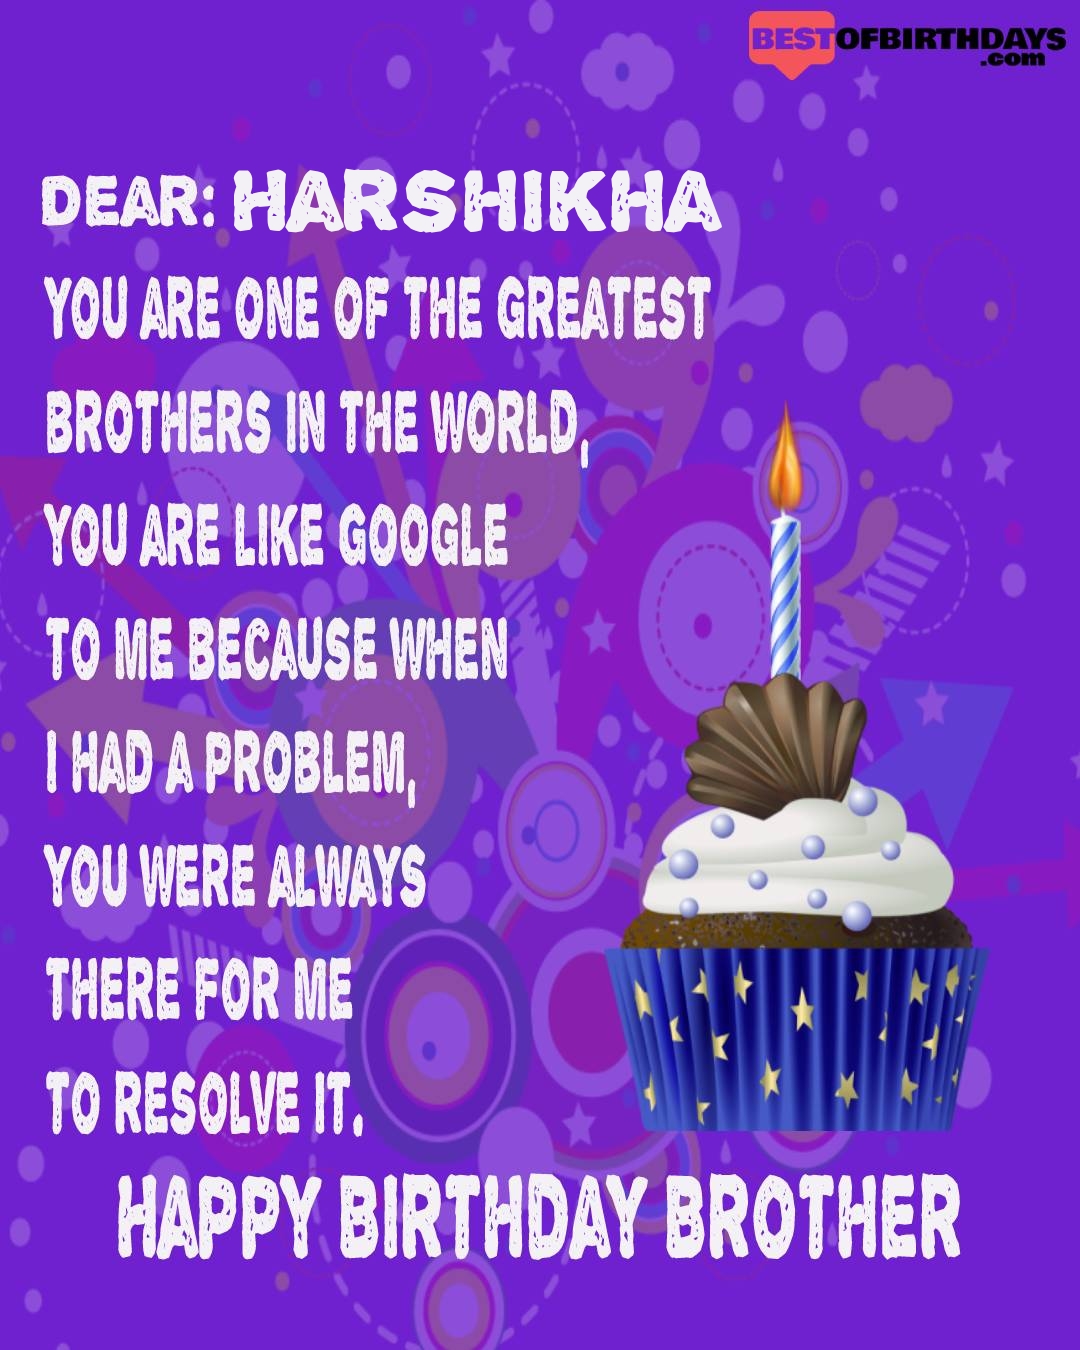 Happy birthday harshikha bhai brother bro